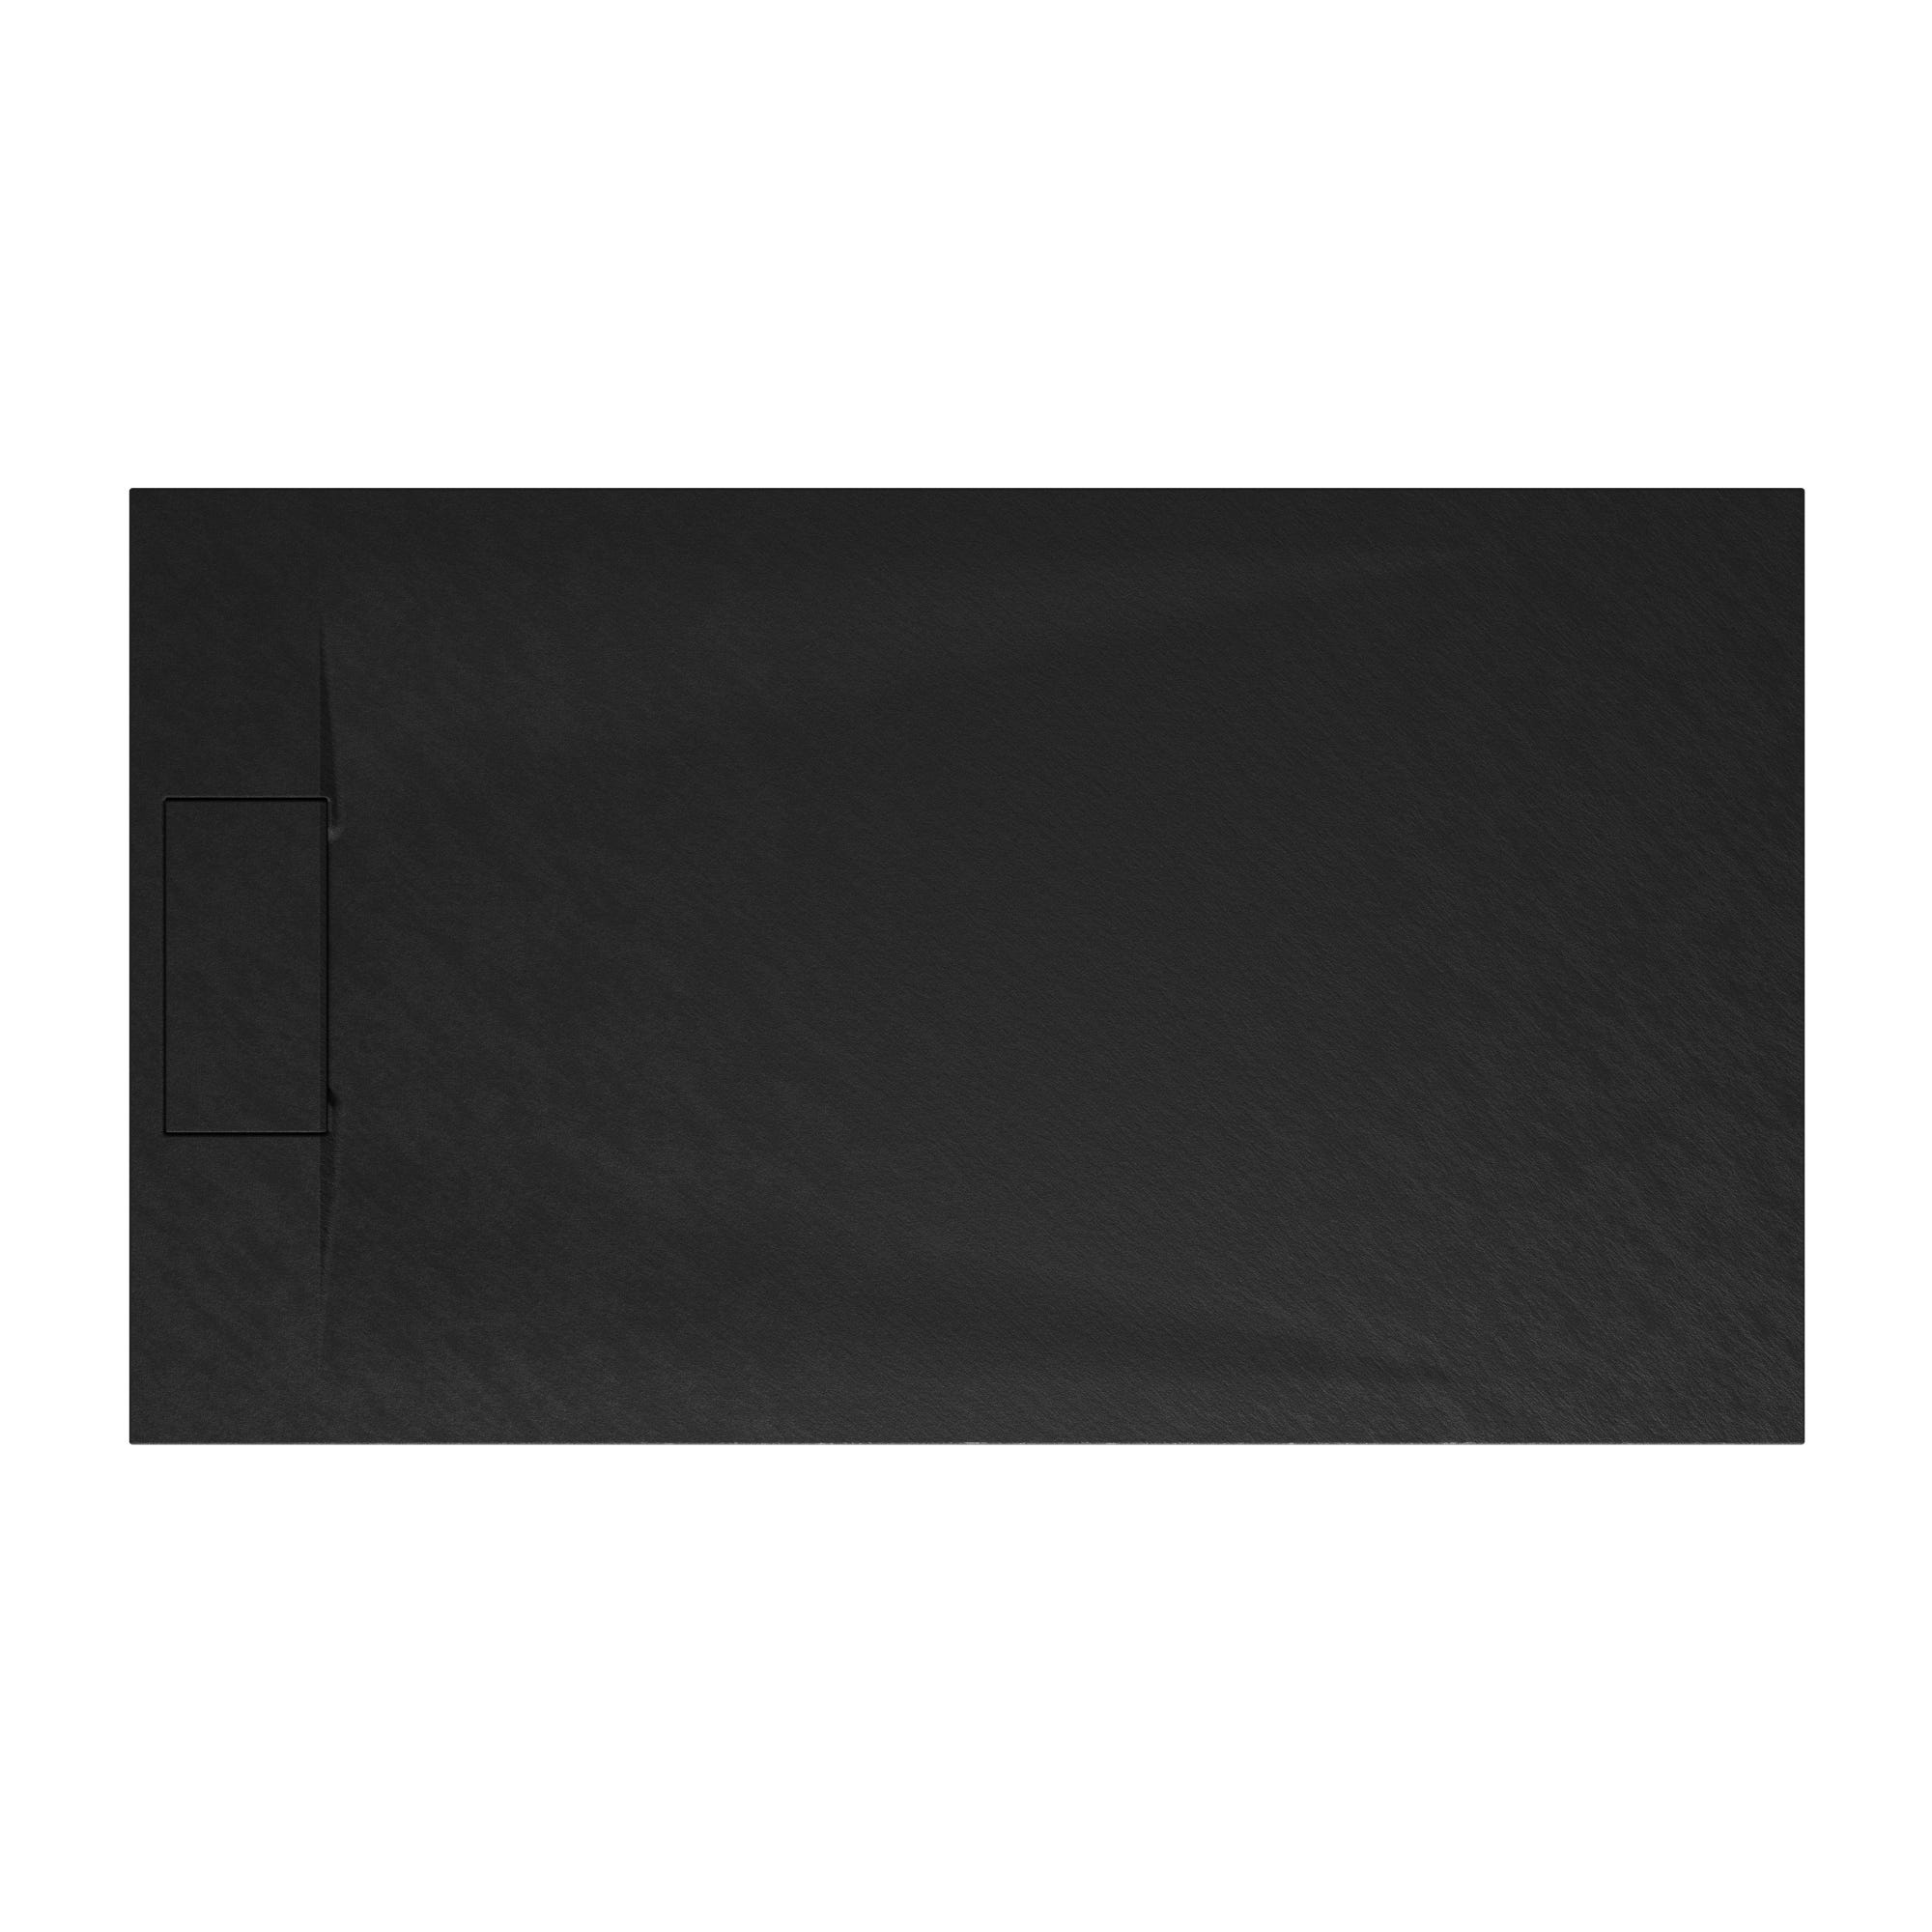 Schulte receveur de douche 80 x 140 x 3,2cm, anthracite effet pierre ultra légers, rectangulaire, extra plat à poser ou à encastrer, bac à douche 1